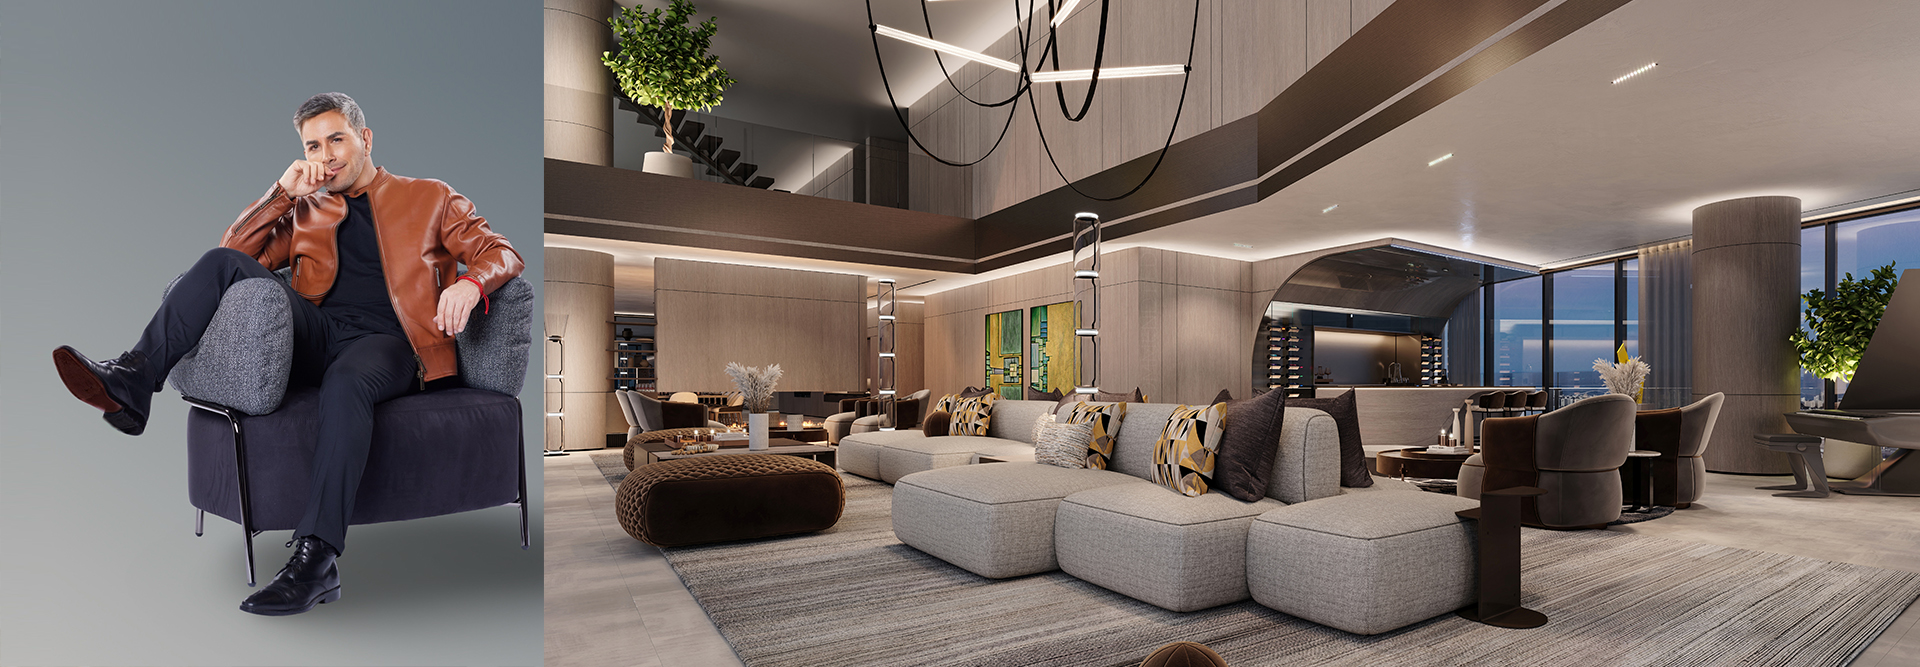 Essence of Luxury Interior Design in Miami